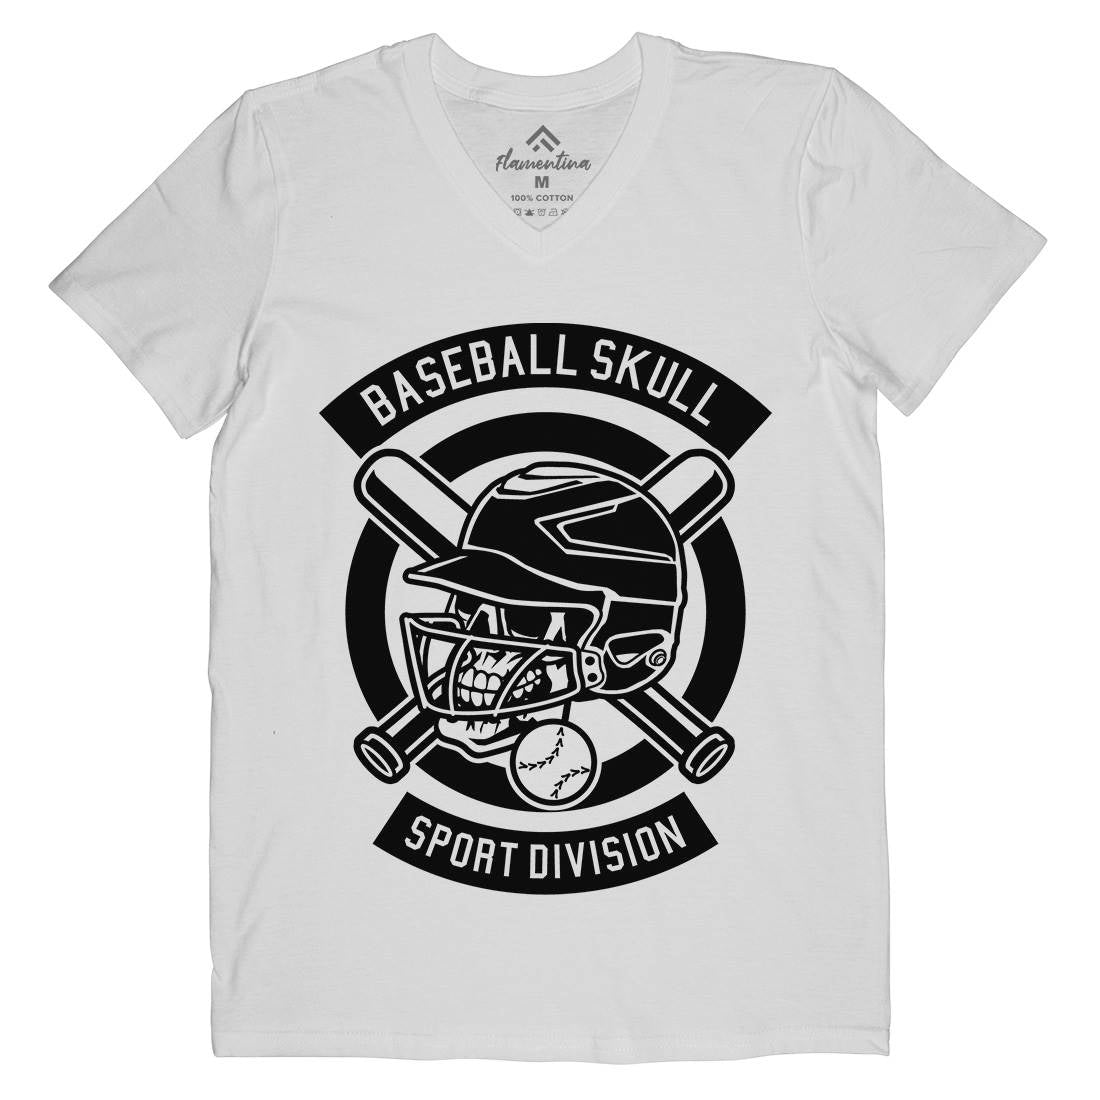 Baseball Skull Mens V-Neck T-Shirt Sport B490